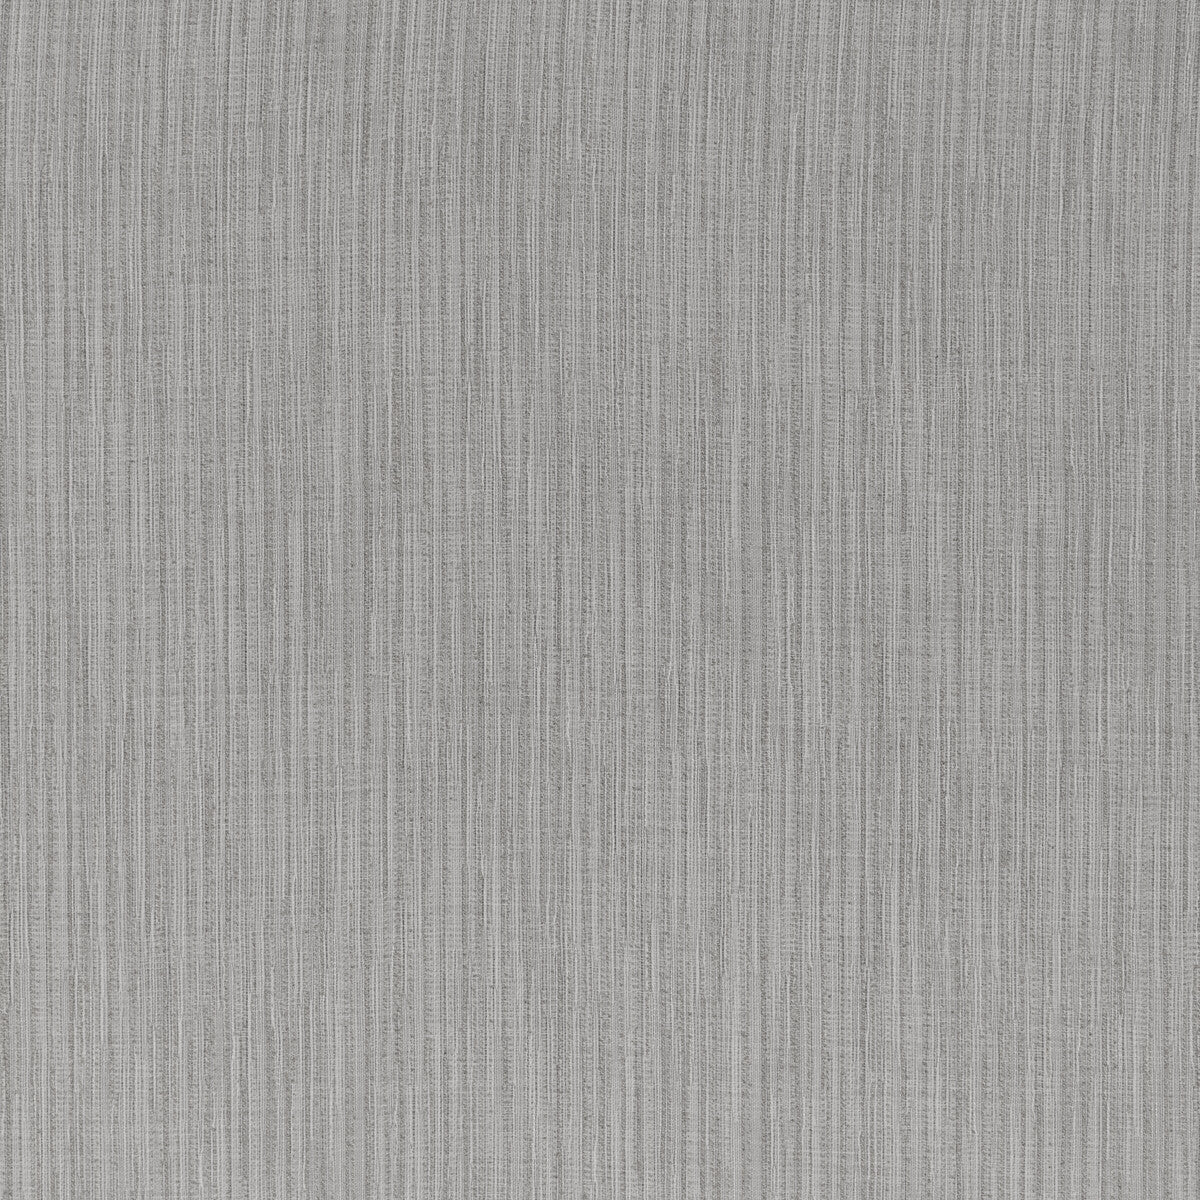 Kravet Basics fabric in 4879-21 color - pattern 4879.21.0 - by Kravet Basics